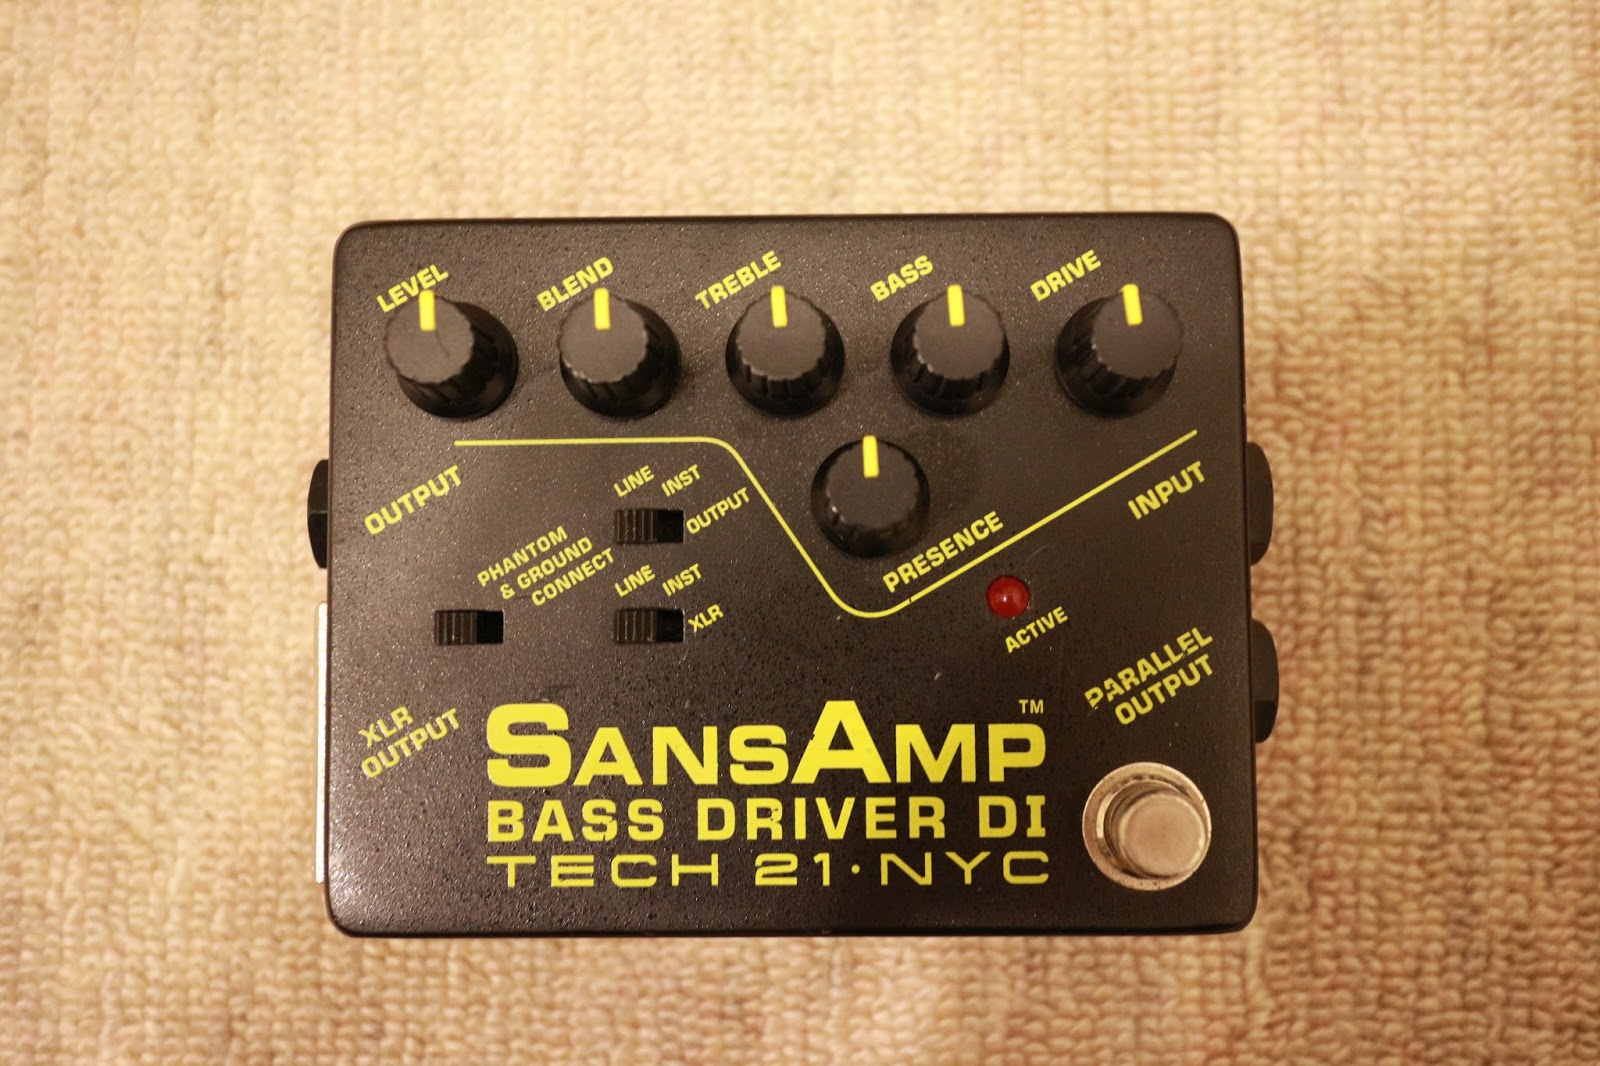 ベースについて考える: TECH21 サンズアンプ SansAmp BASS DRIVER DI レビューと使い方&試奏音源